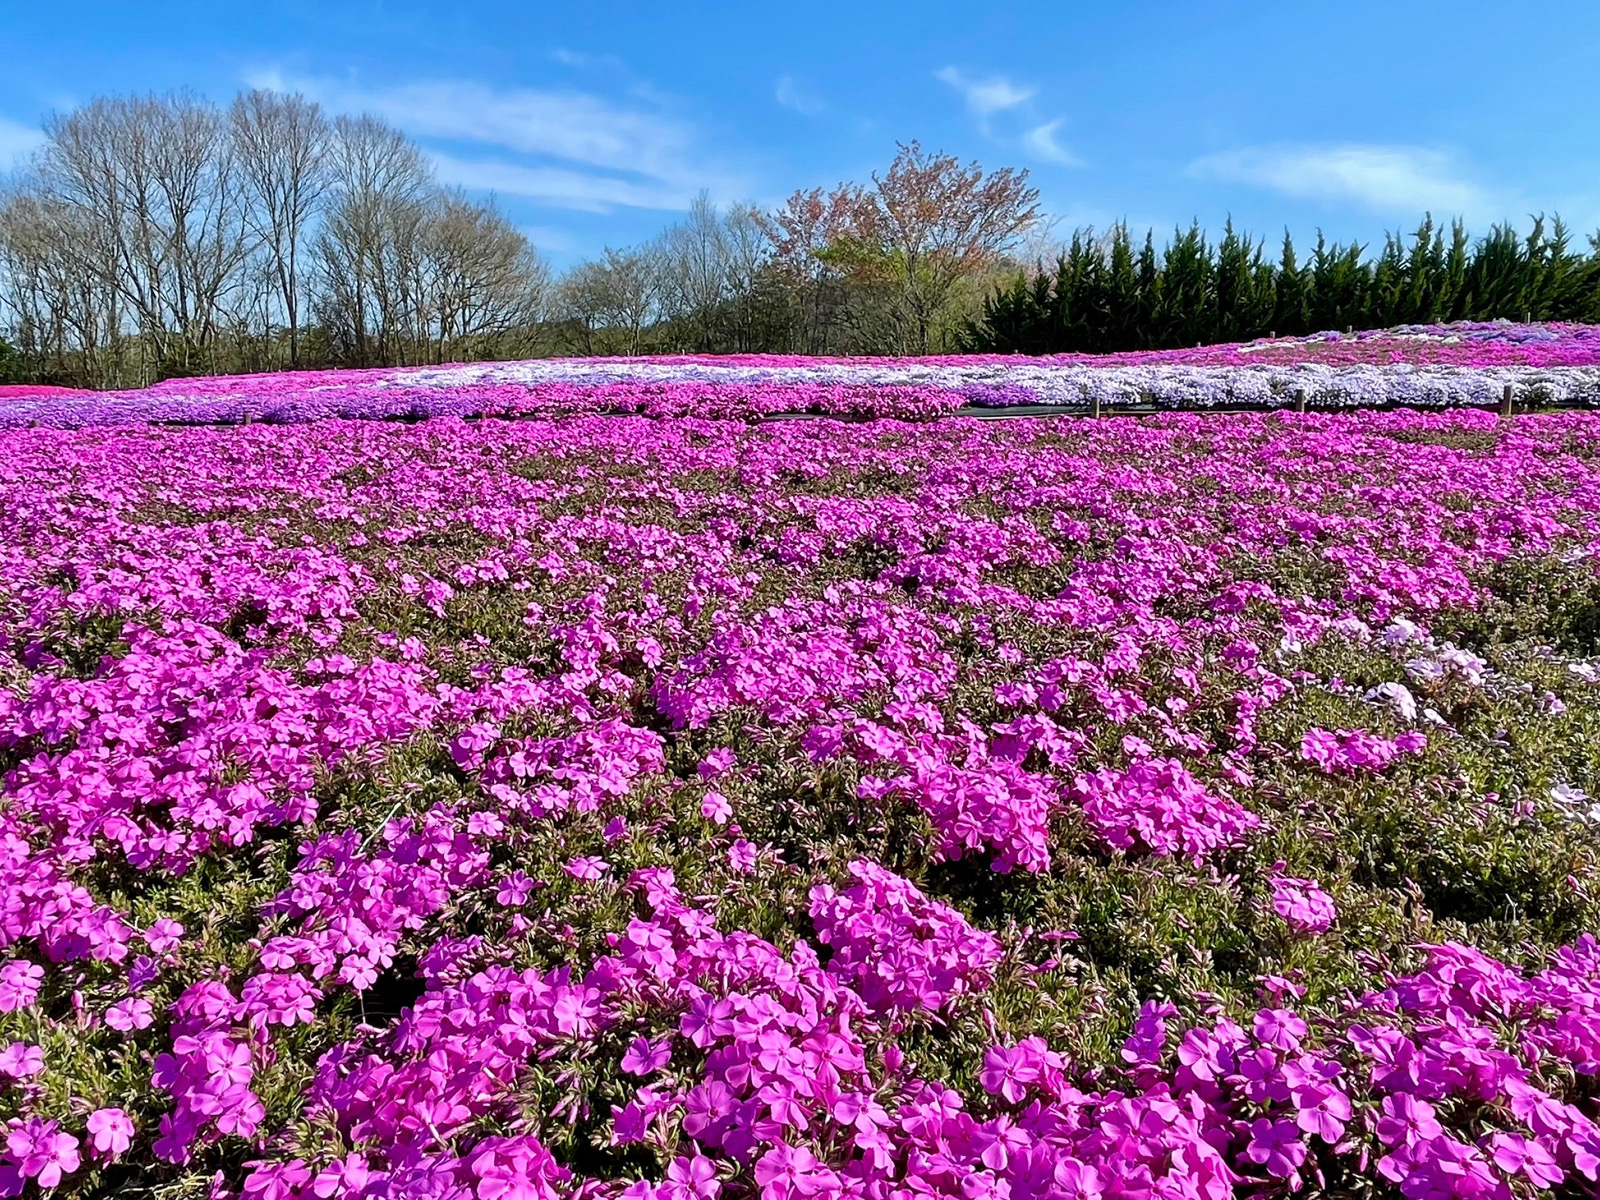 【2024Park open】Moss Phlox【50% flowering】Nemophila【Best time for viewing】Pinks【Flower buds】